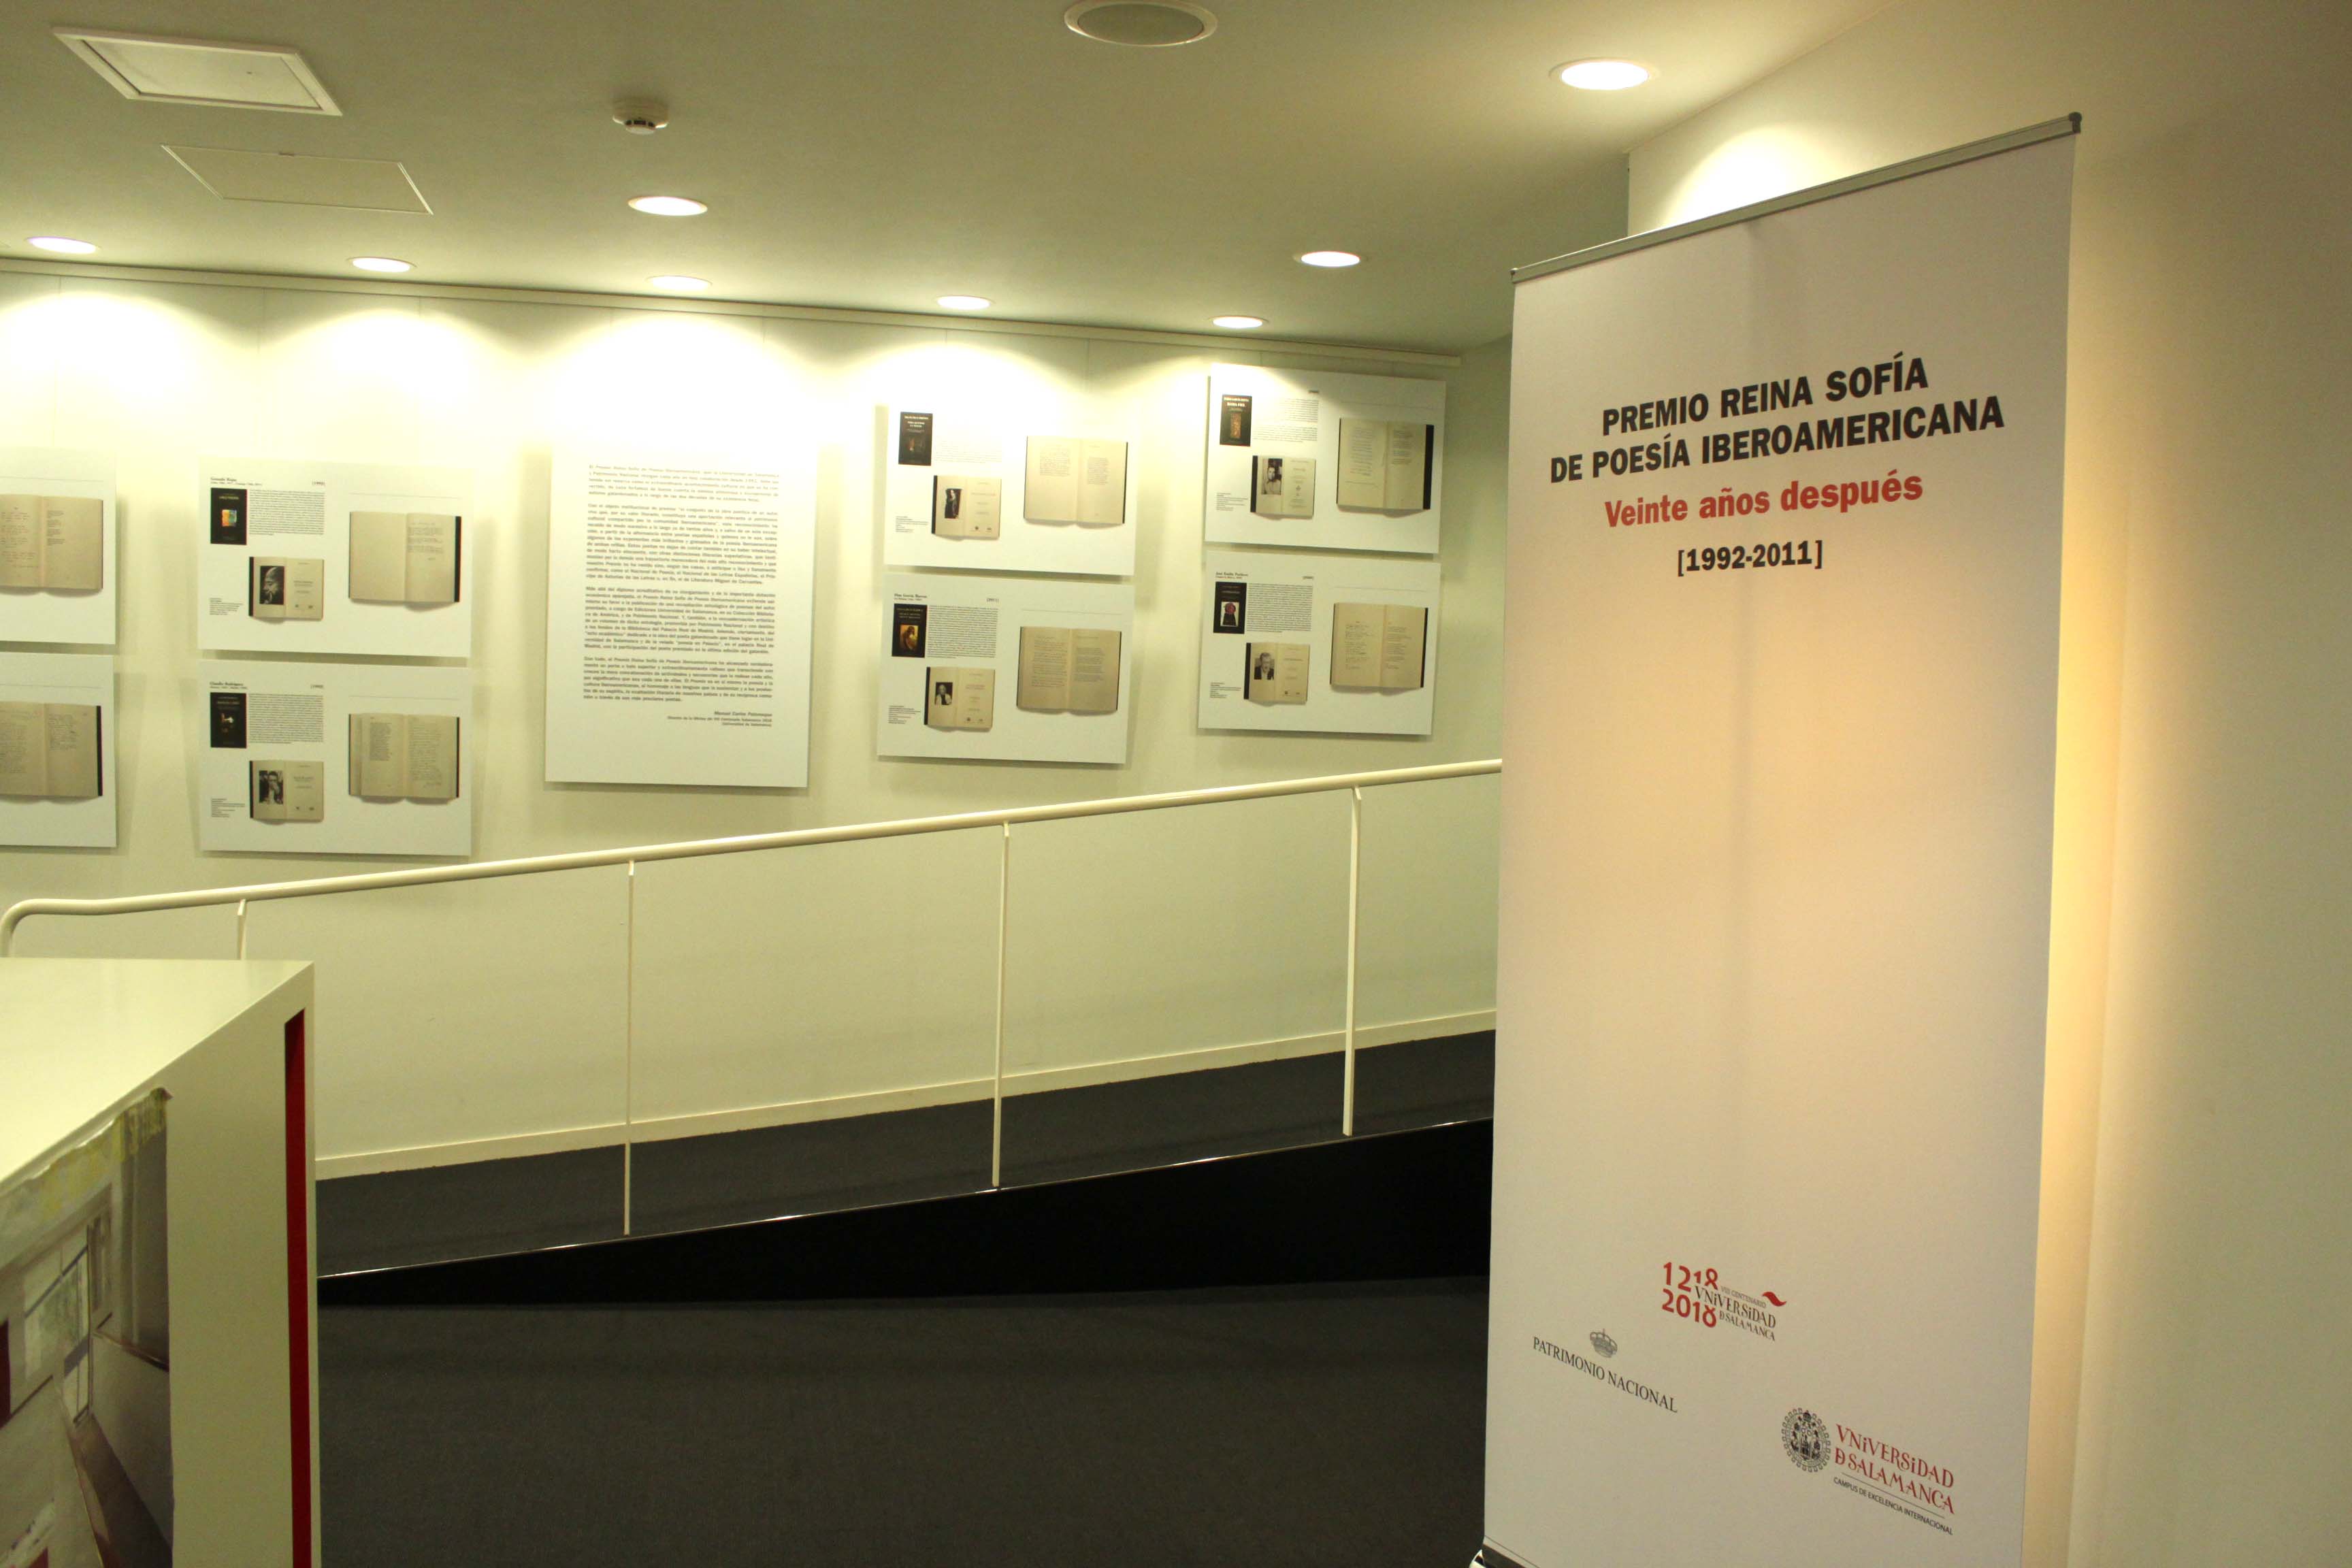 El rector visita la exposición “Premio Reina Sofía de Poesía Iberoamericana. Veinte años después (1992 – 2011)”